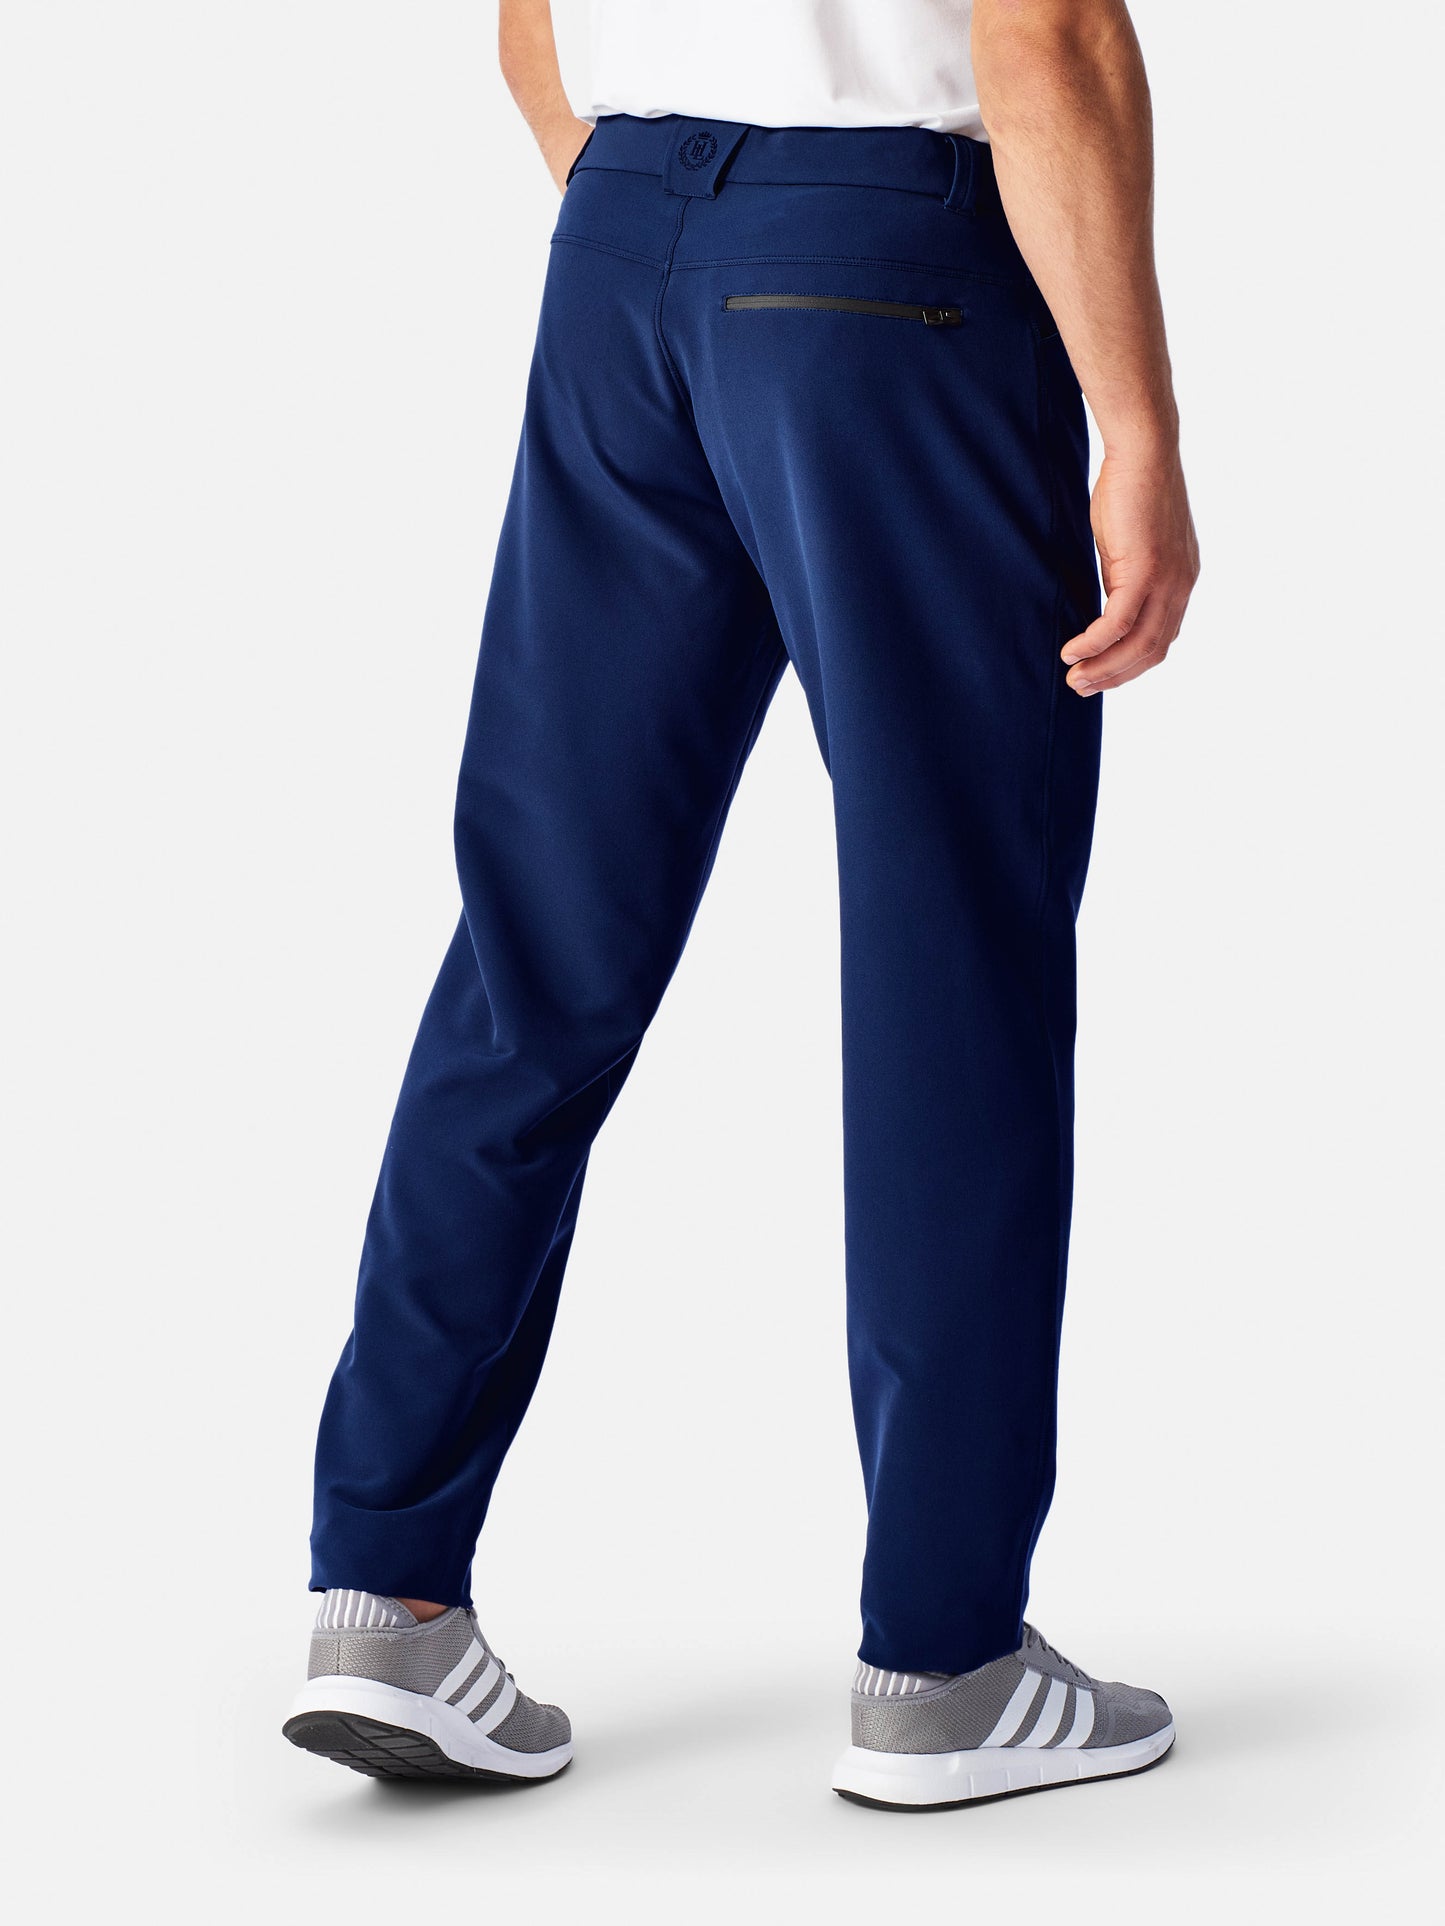 Explorer Trouser 3.0 - Navy Blue